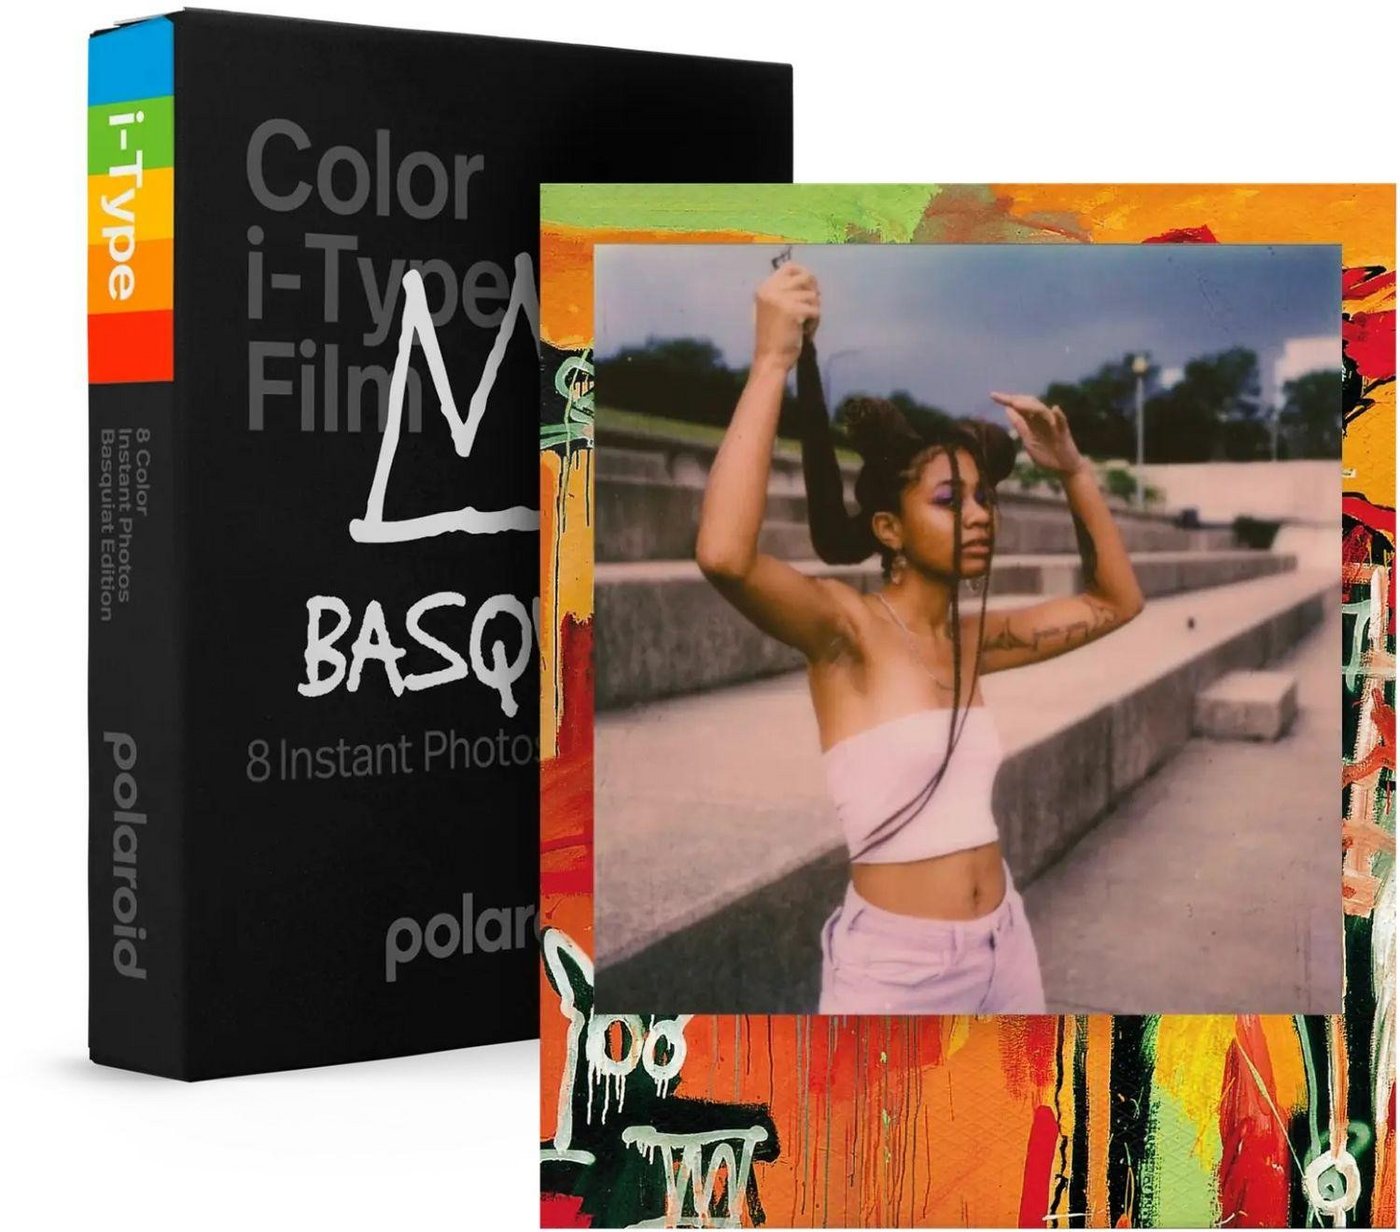 Polaroid Sofortbildfilm »i-Type Color Film Basquiat Limited Edition« von Polaroid